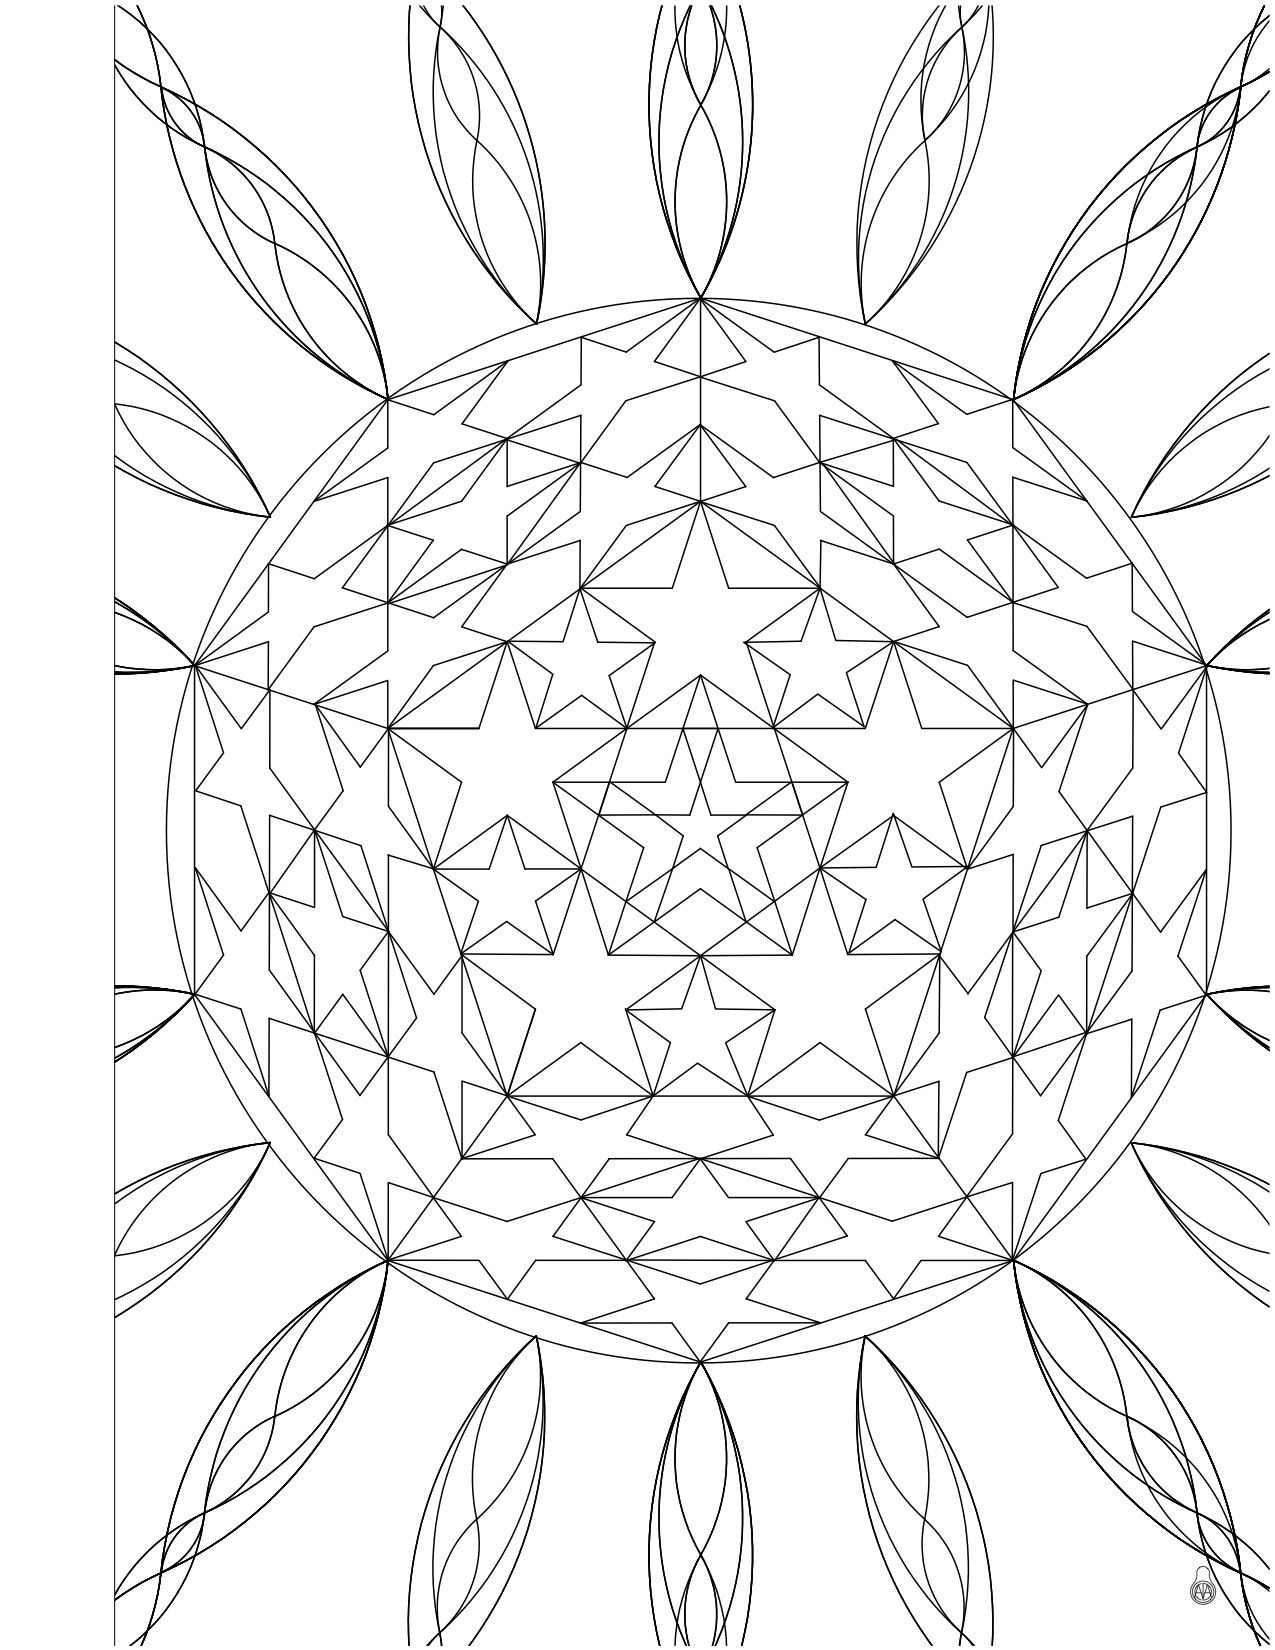 26 DodecahedronBleed.jpg